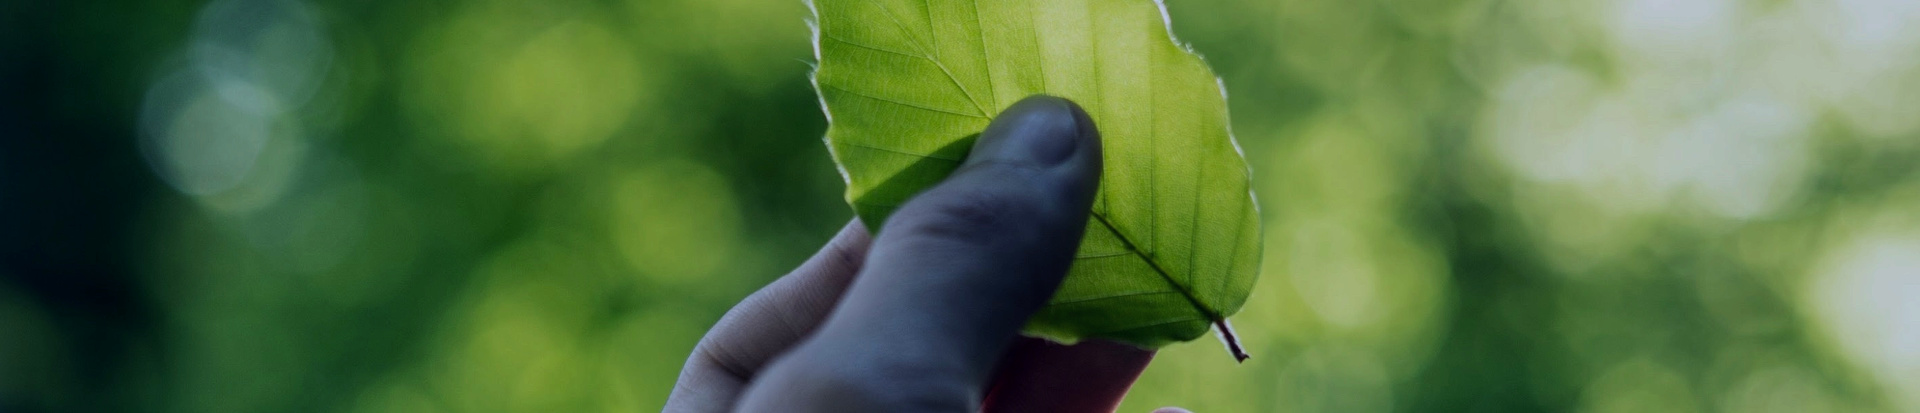 Una mano en primer plano sujetando una hoja verde en un bosque